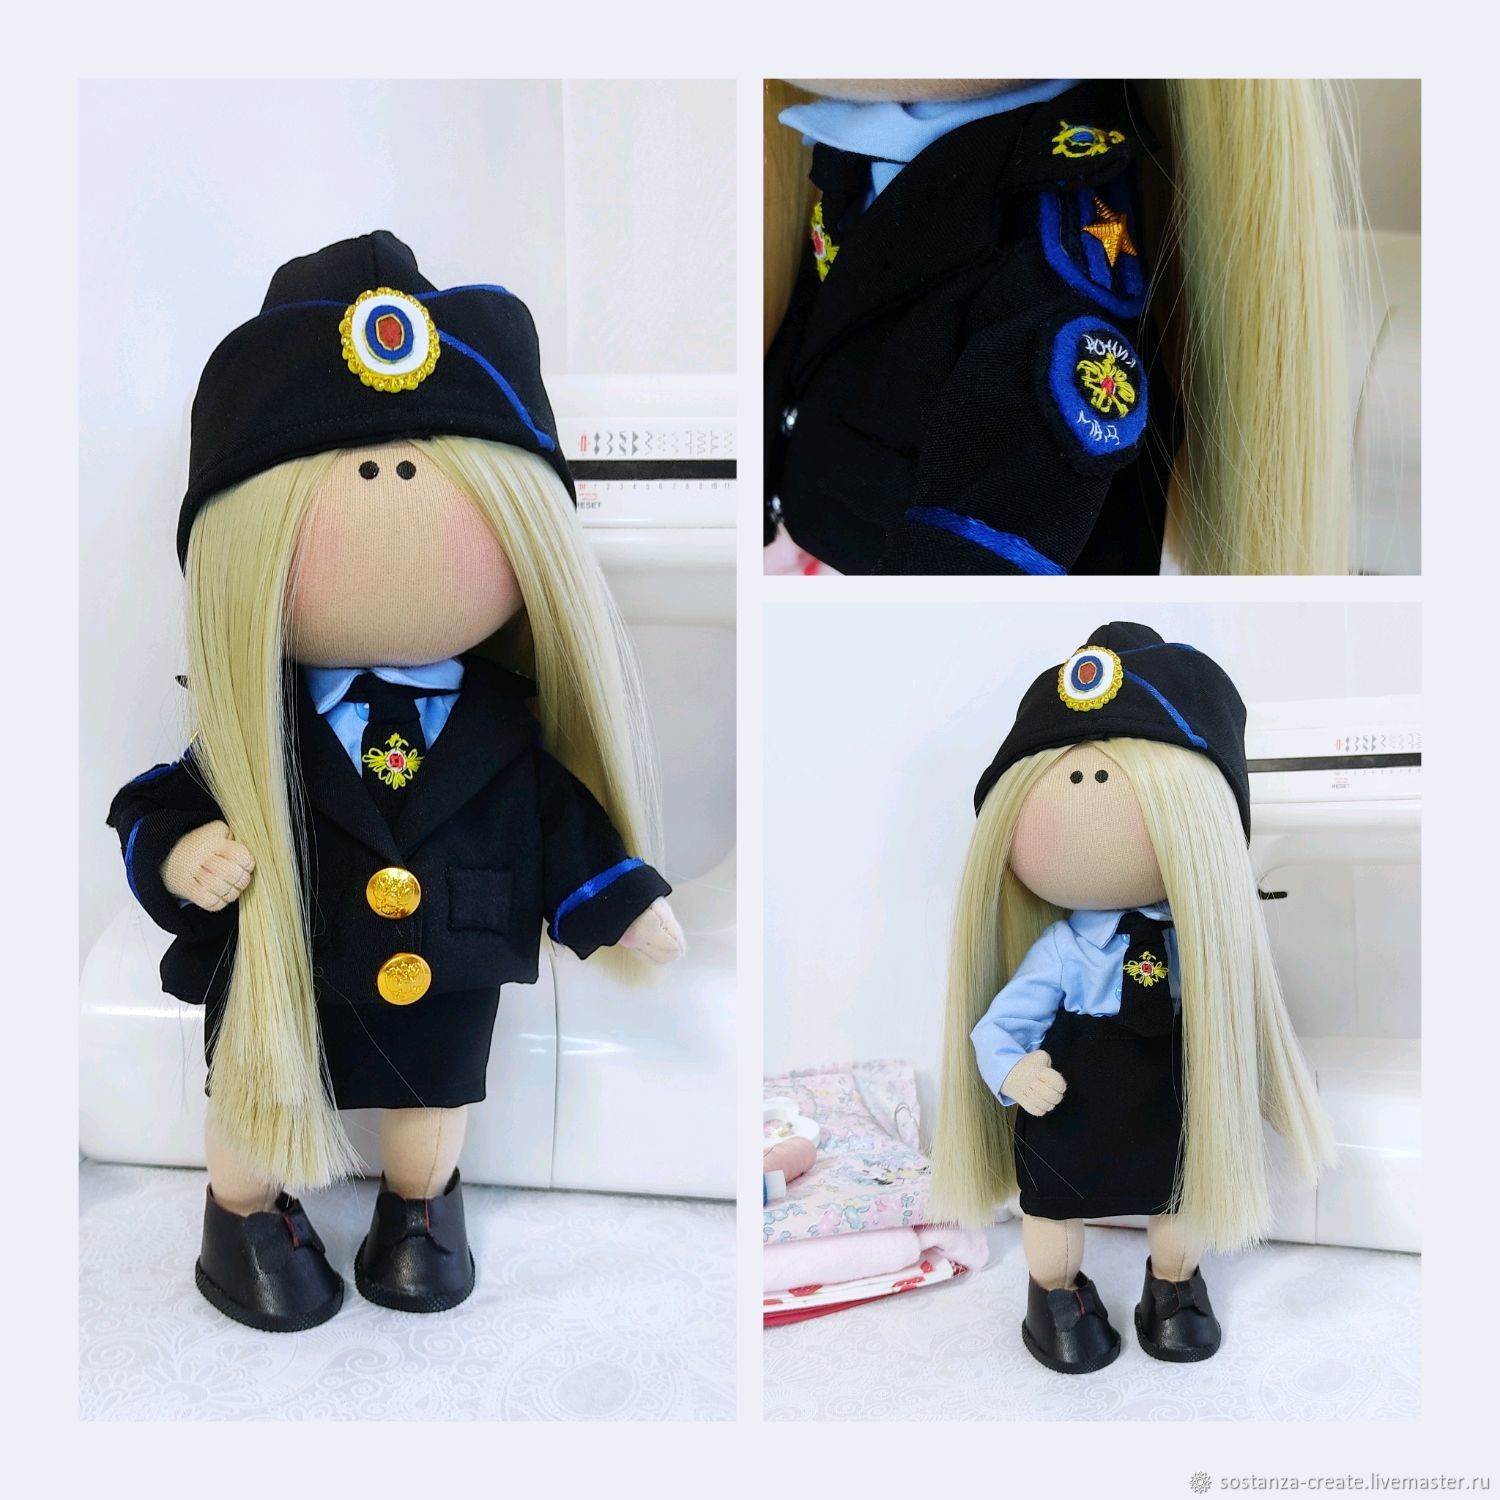 Портретная кукла Полиция Текстильная кукла в стиле тильда, Портретная кукла, Шахты,  Фото №1